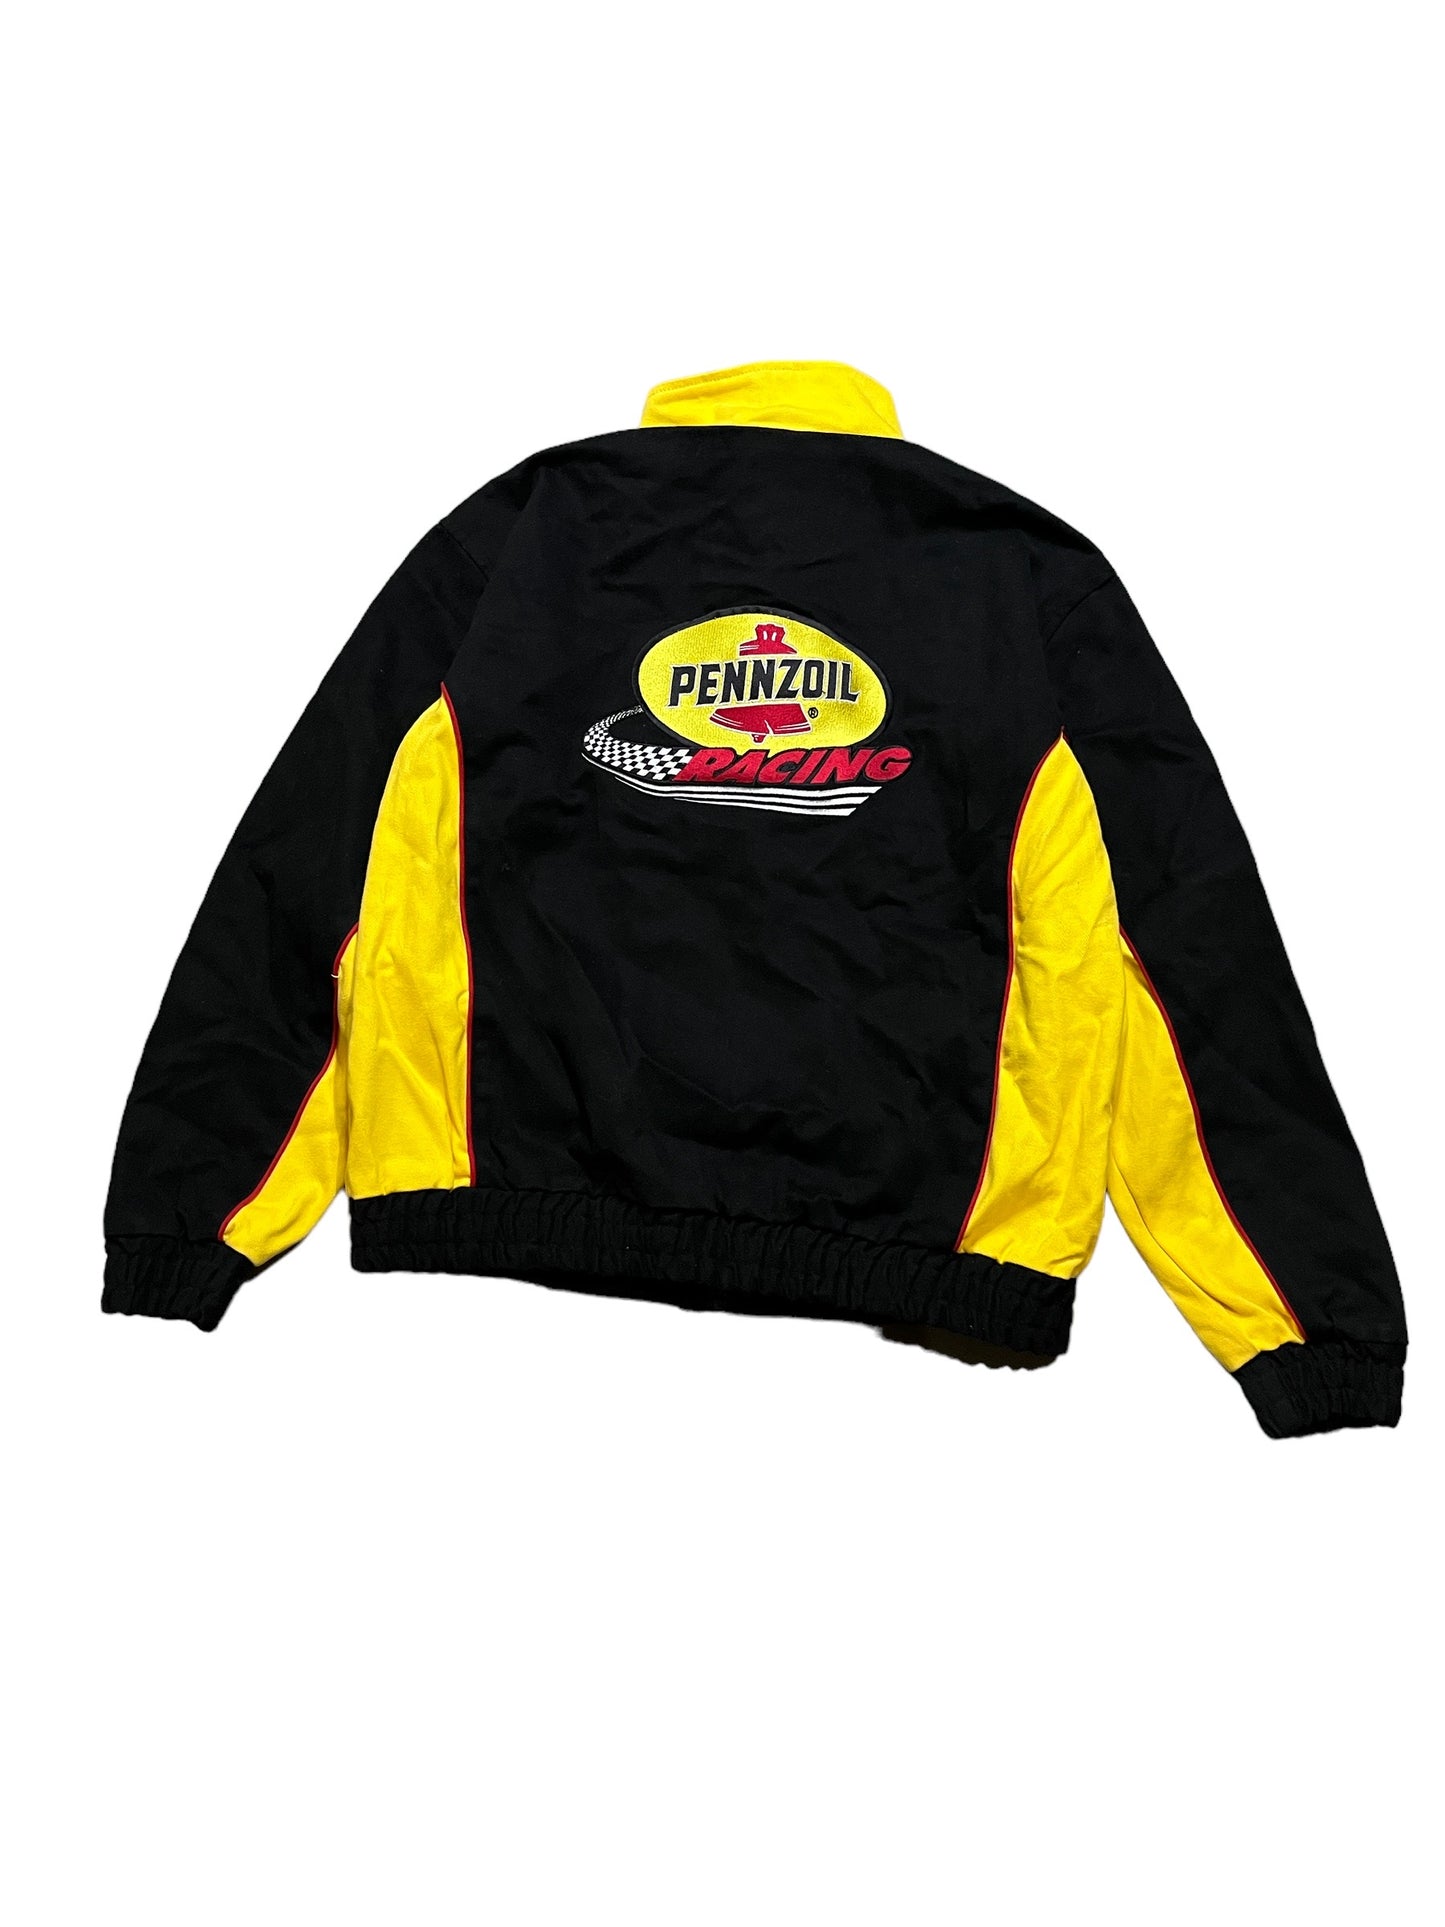 Vintage Pennzoil Racing Jacket